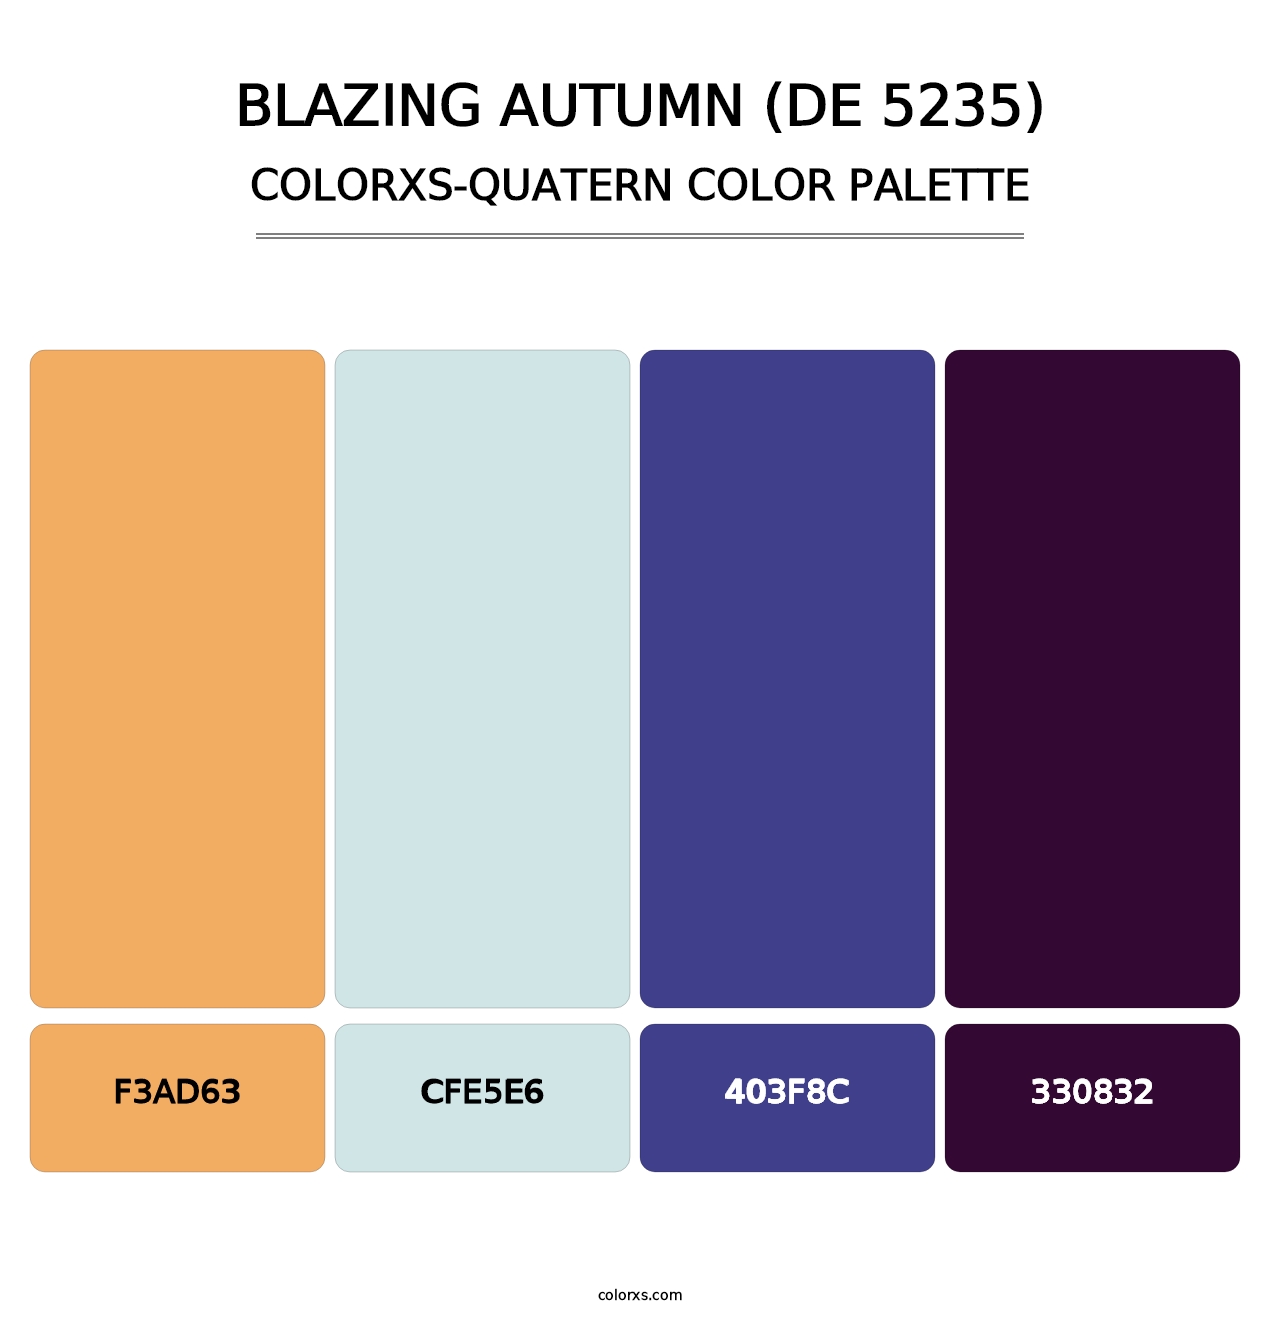 Blazing Autumn (DE 5235) - Colorxs Quatern Palette